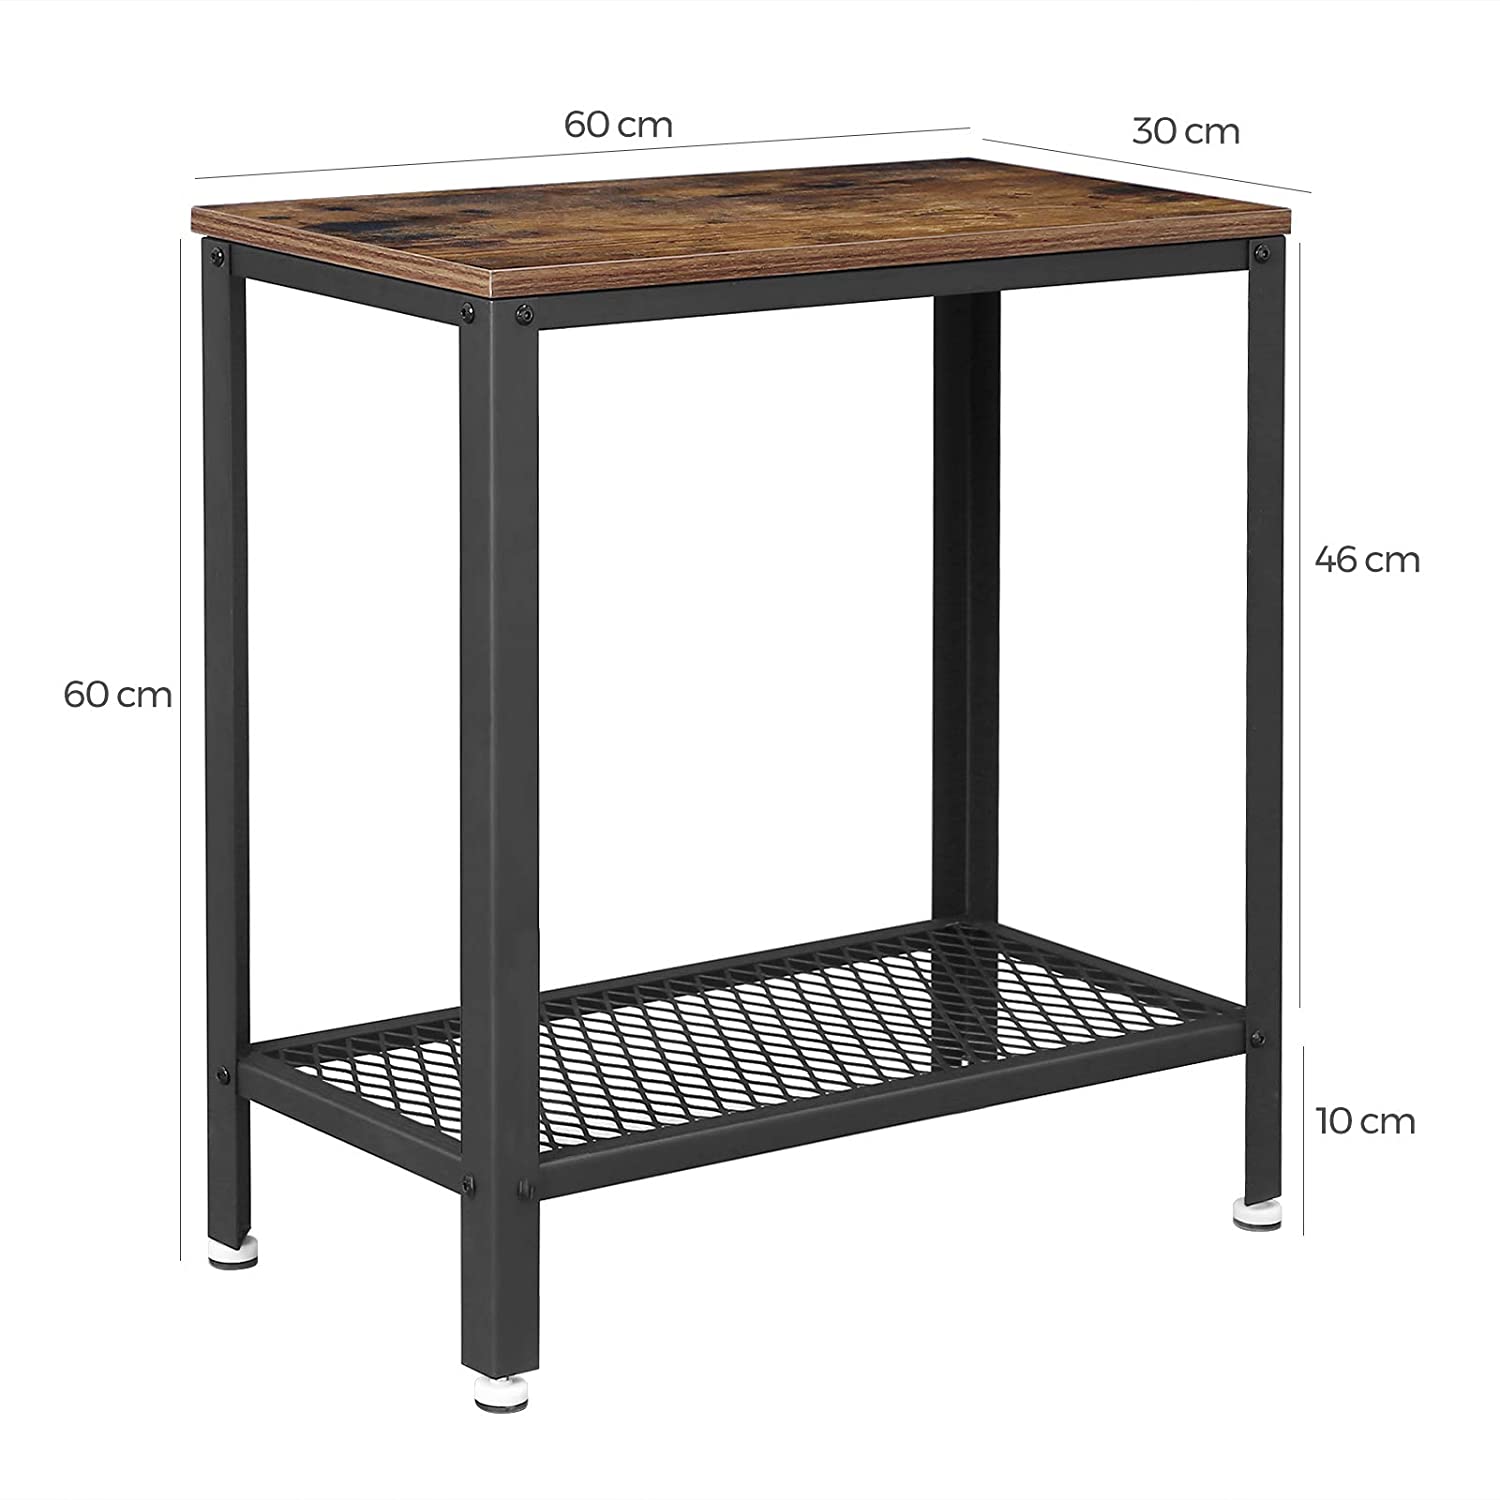 stolík 60x30x60cm s policou hnedý drevo kov megamix.sk